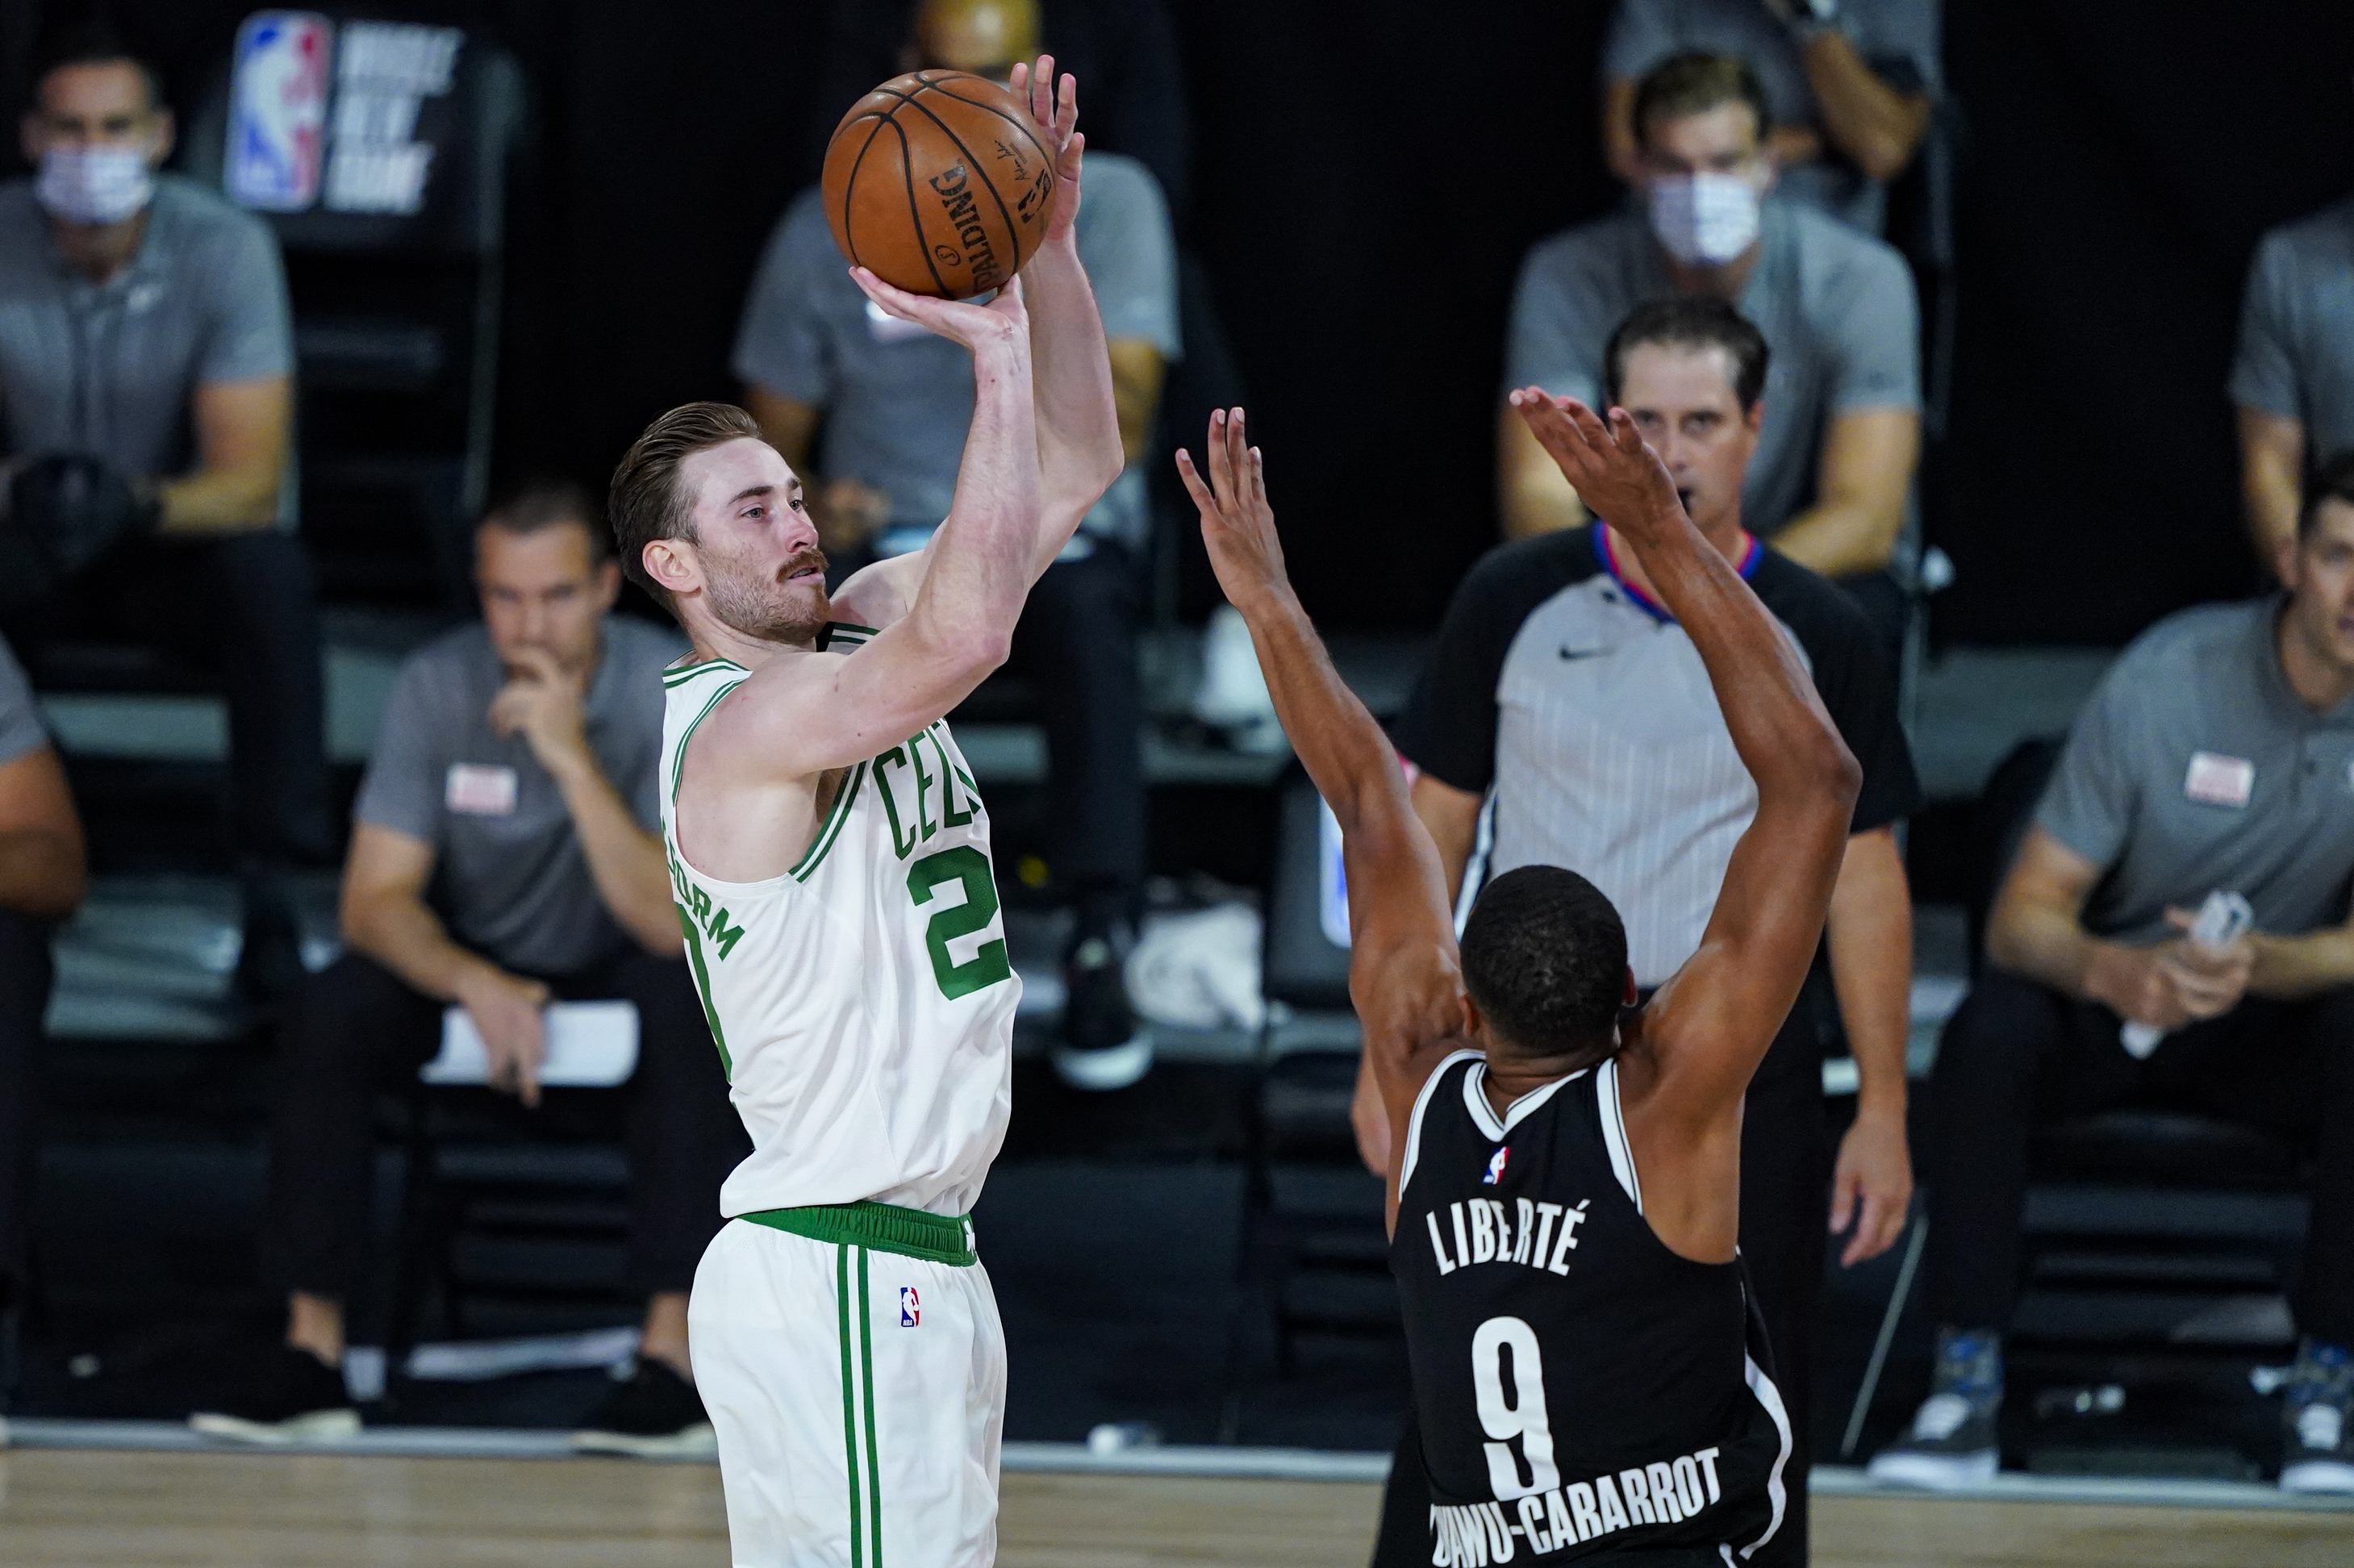 As his quarantine nears an end, Celtics' Gordon Hayward making